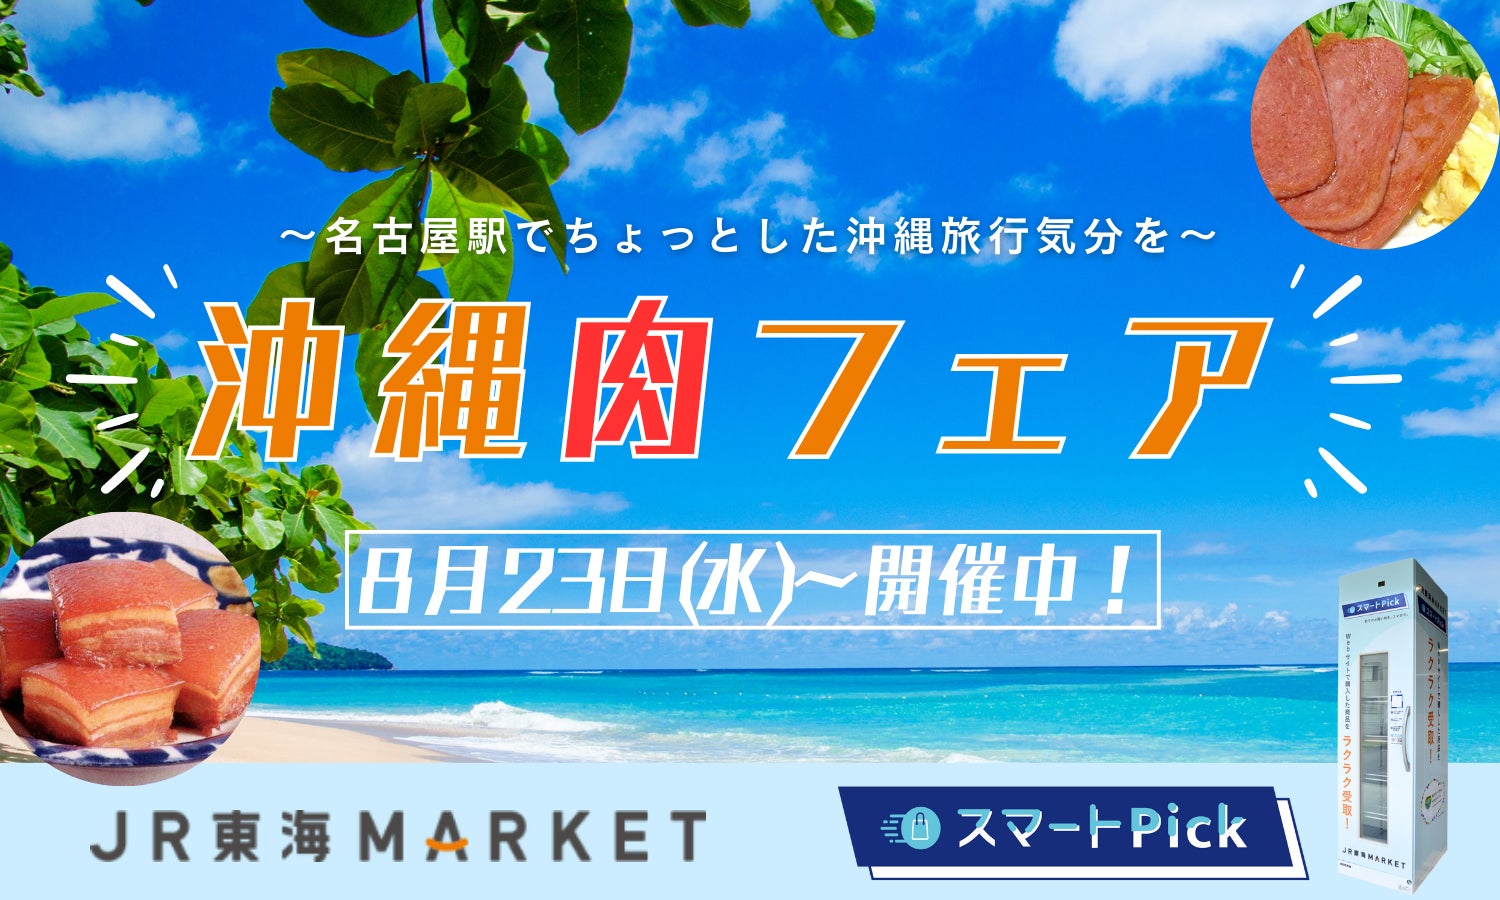 「ＪＲ東海ＭＡＲＫＥＴ」で購入した商品を受け取れる「スマートPick」にて、『沖縄肉フェア』を開催